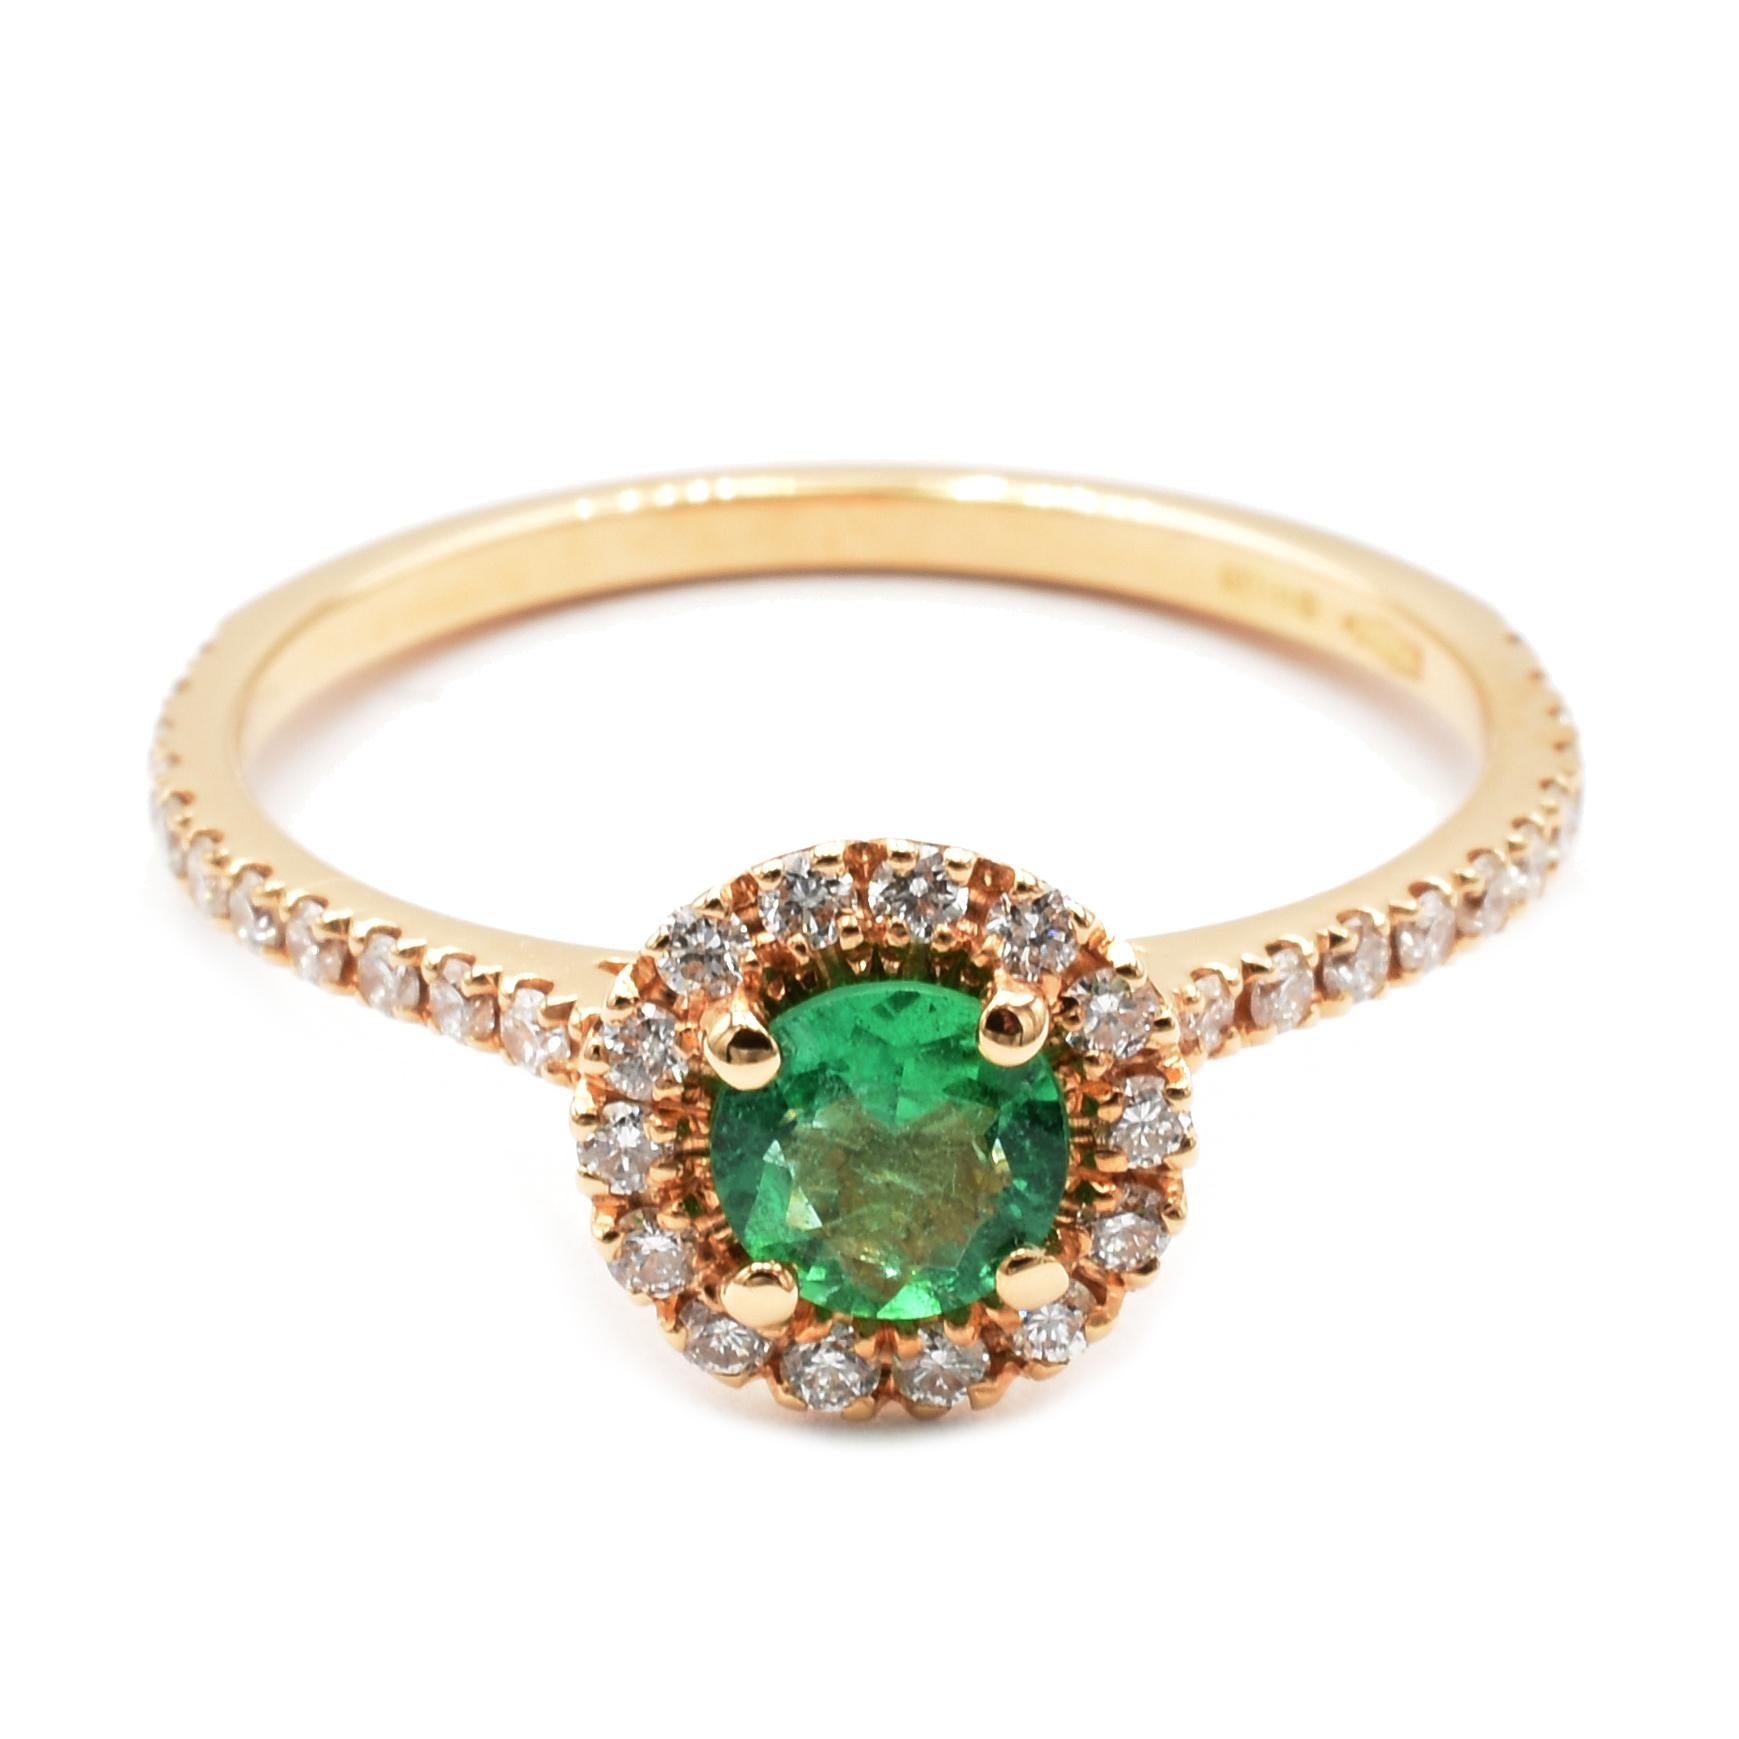 18Kt Rose Gold Ring mit einem runden hellgrünen Smaragd, umgeben von kleinen weißen Diamanten.
Handgefertigt in Italien in unserem Atelier in Valenza (AL)
18Kt Gold g 1.90
Smaragd ct 0,28 Durchmesser mm 4,53
Diamanten ct 0,31 
Dieser Ring hat die